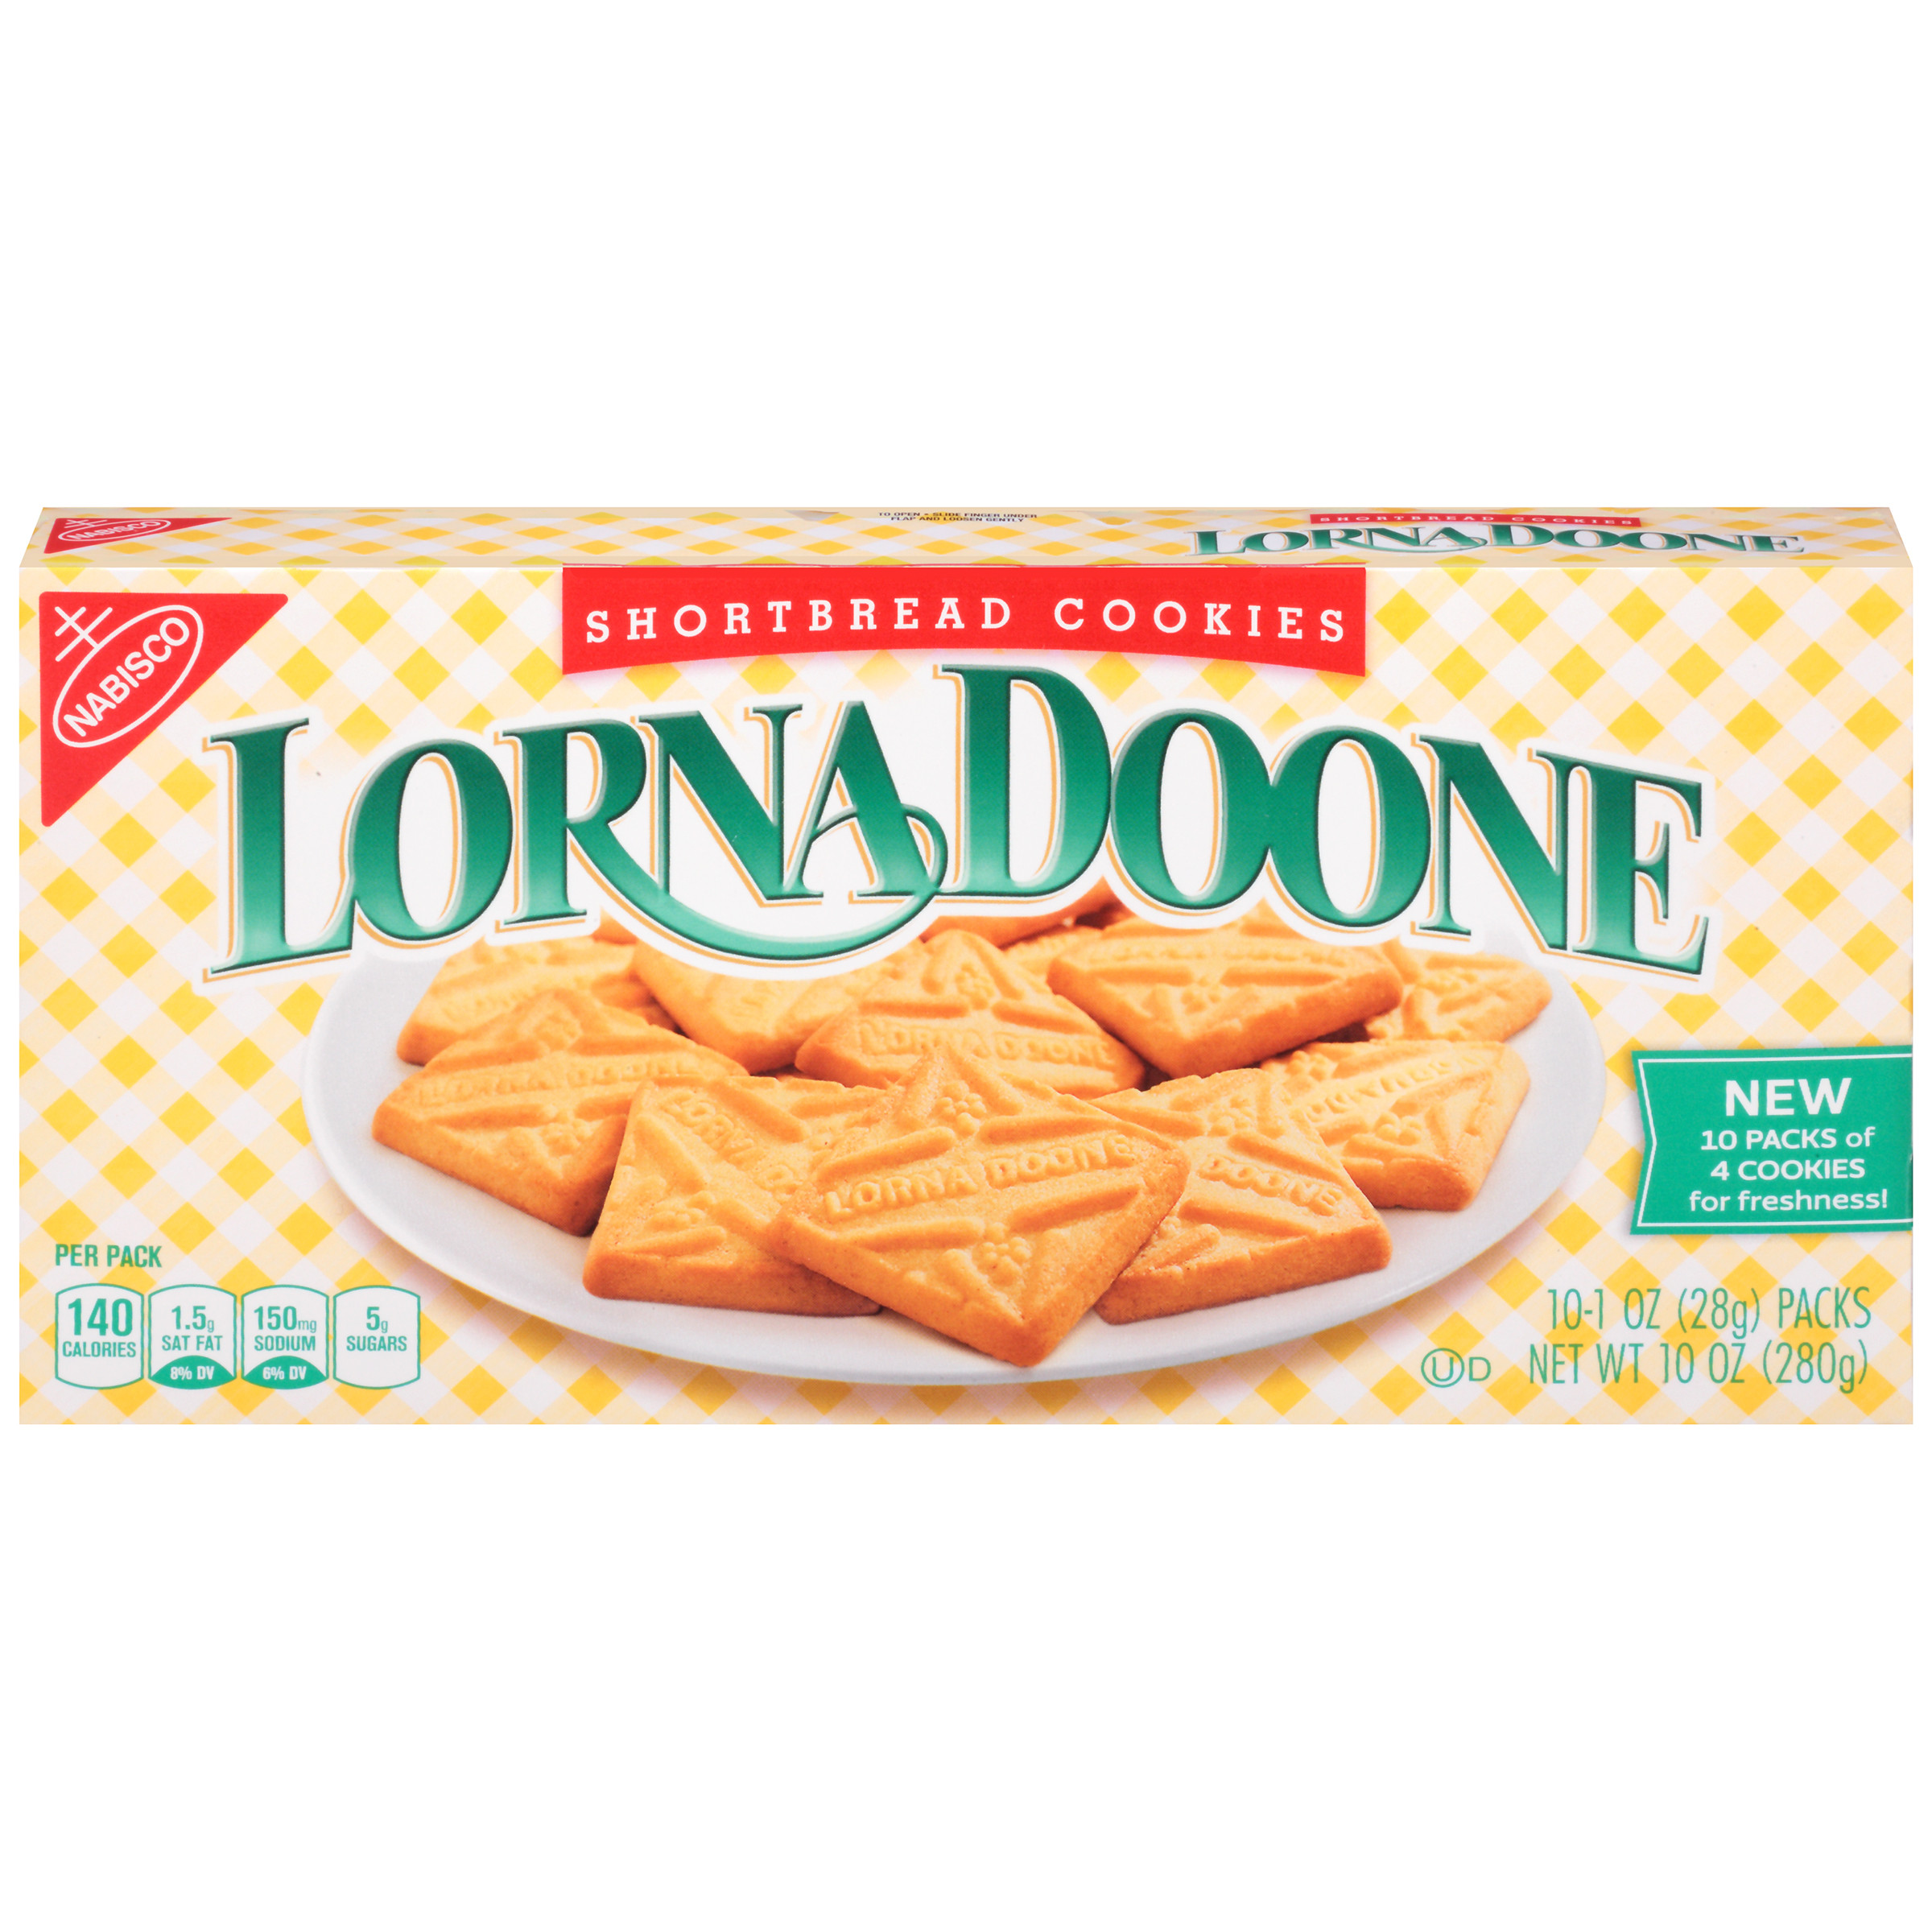 Lorna Doone Shortbread Cookies Best Of Nabisco Lorna Doone Shortbread Cookies 1 Oz 10 Count